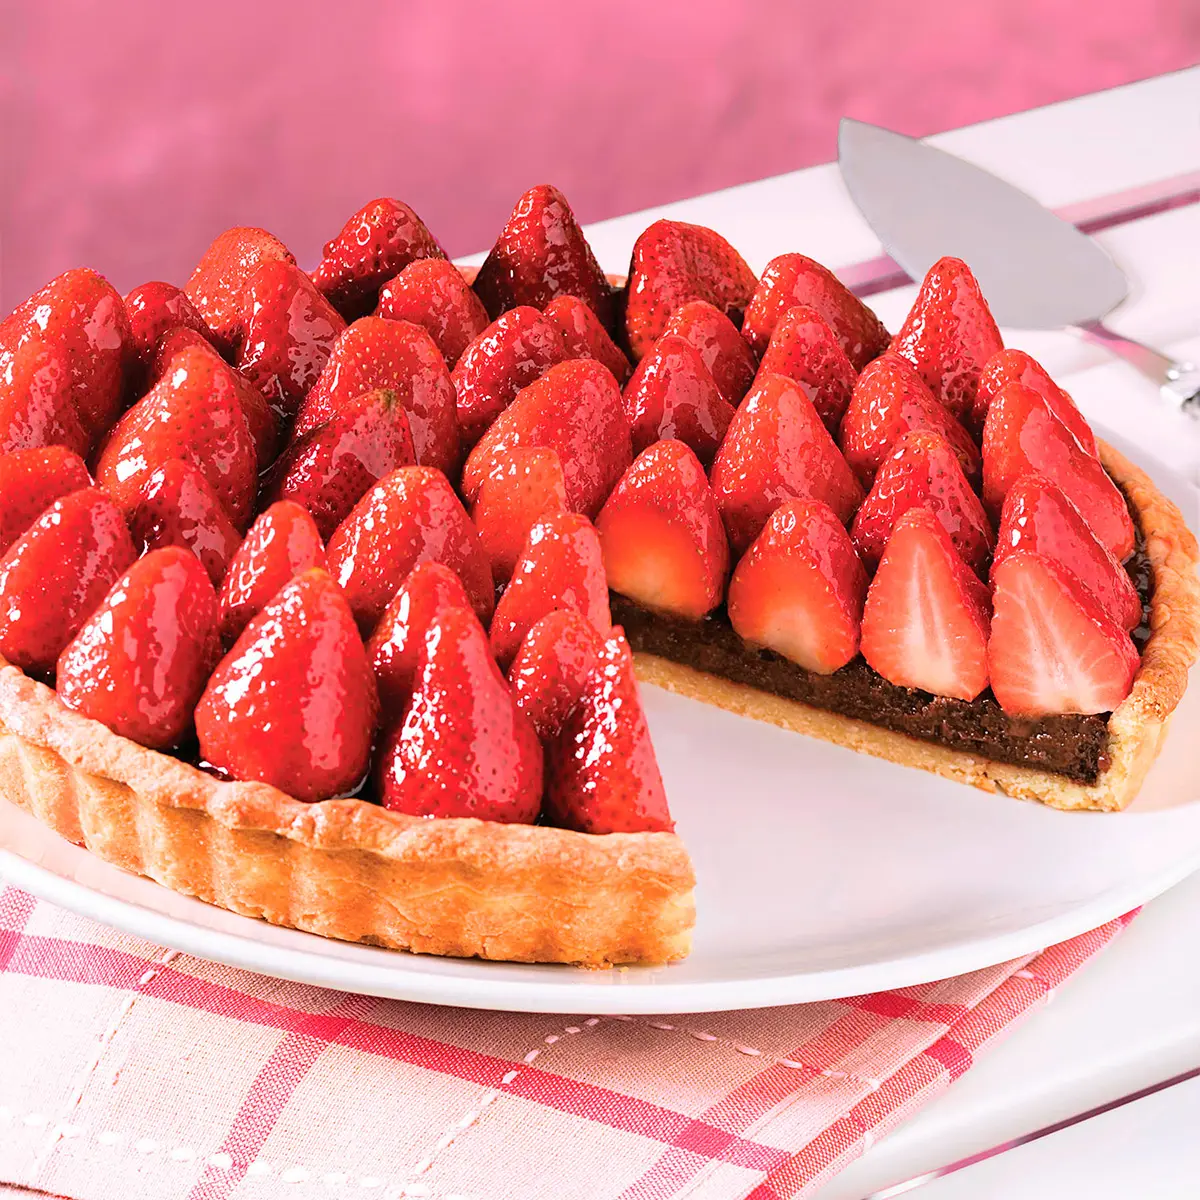 Chocolate strawberries pie